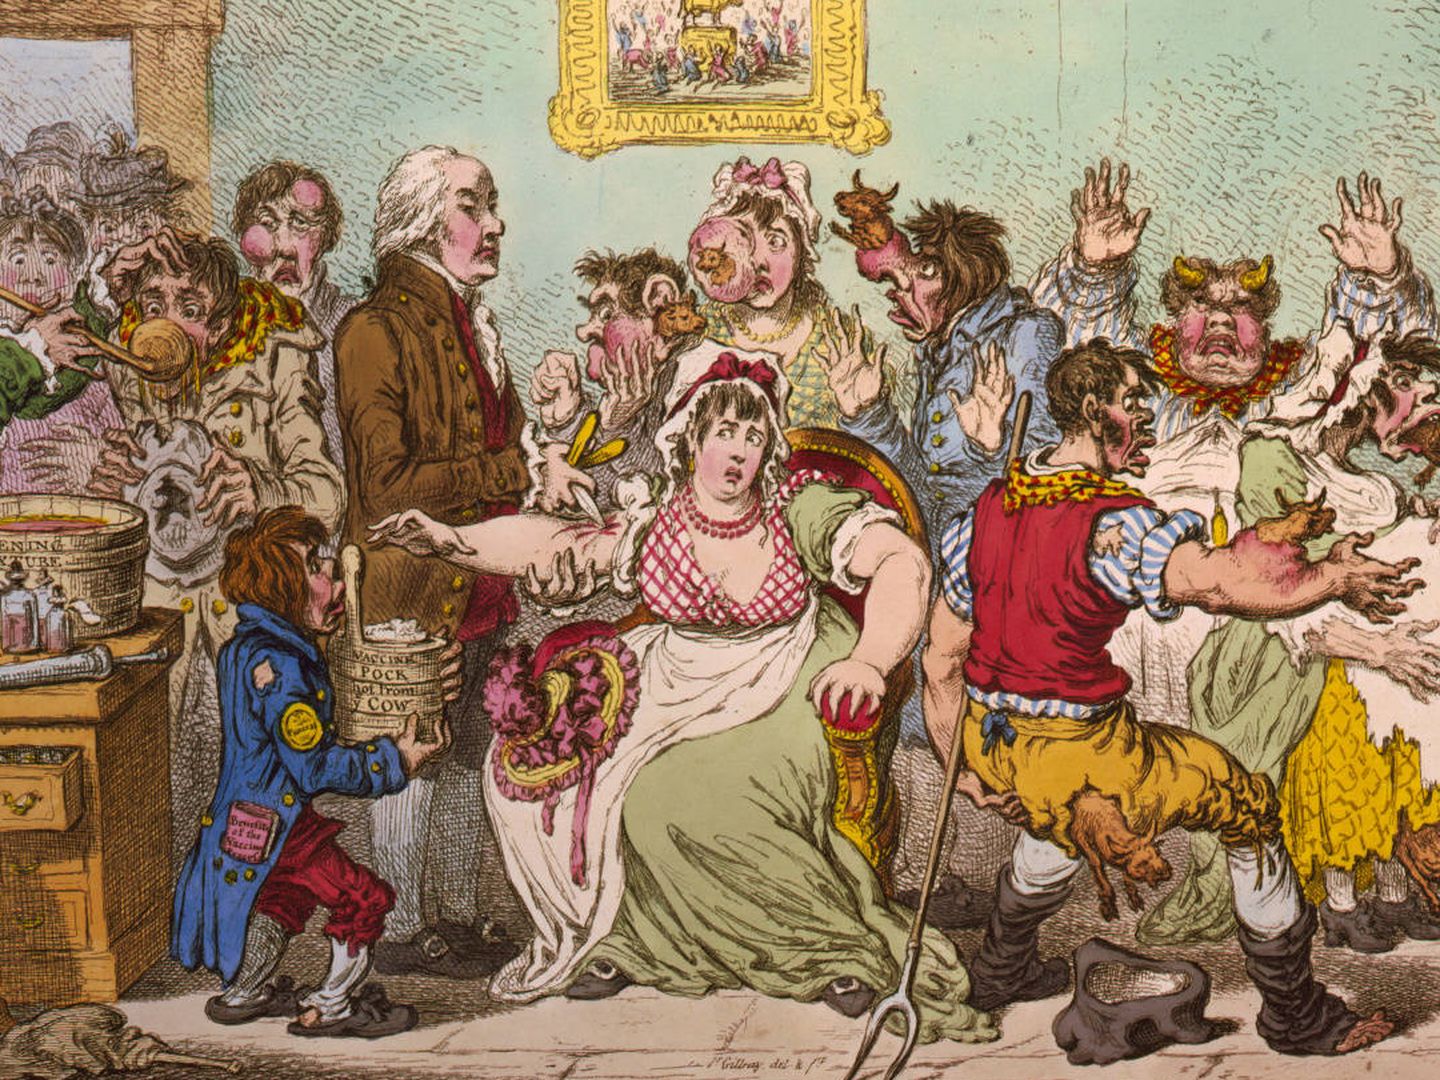 Caricatura de Jenner vacunando a los pacientes, que temían que les hiciera crecer apéndices vacunos. (James Gillray, 1802)